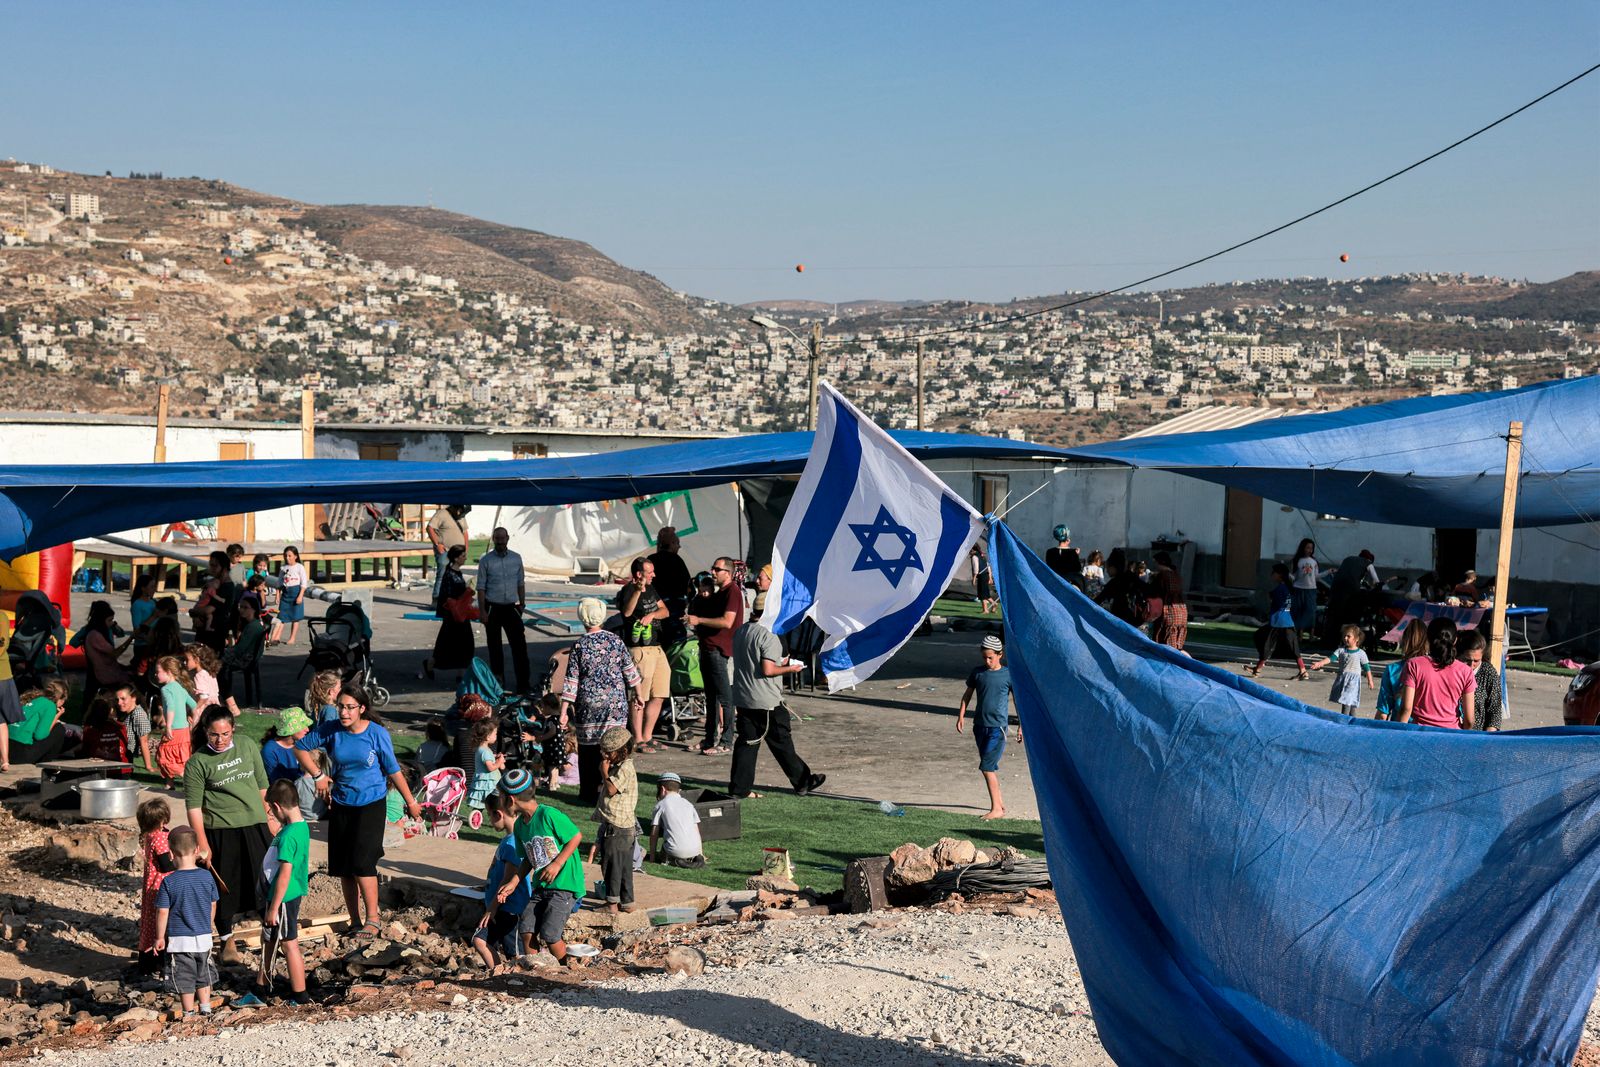 مستوطنون إسرائيليون يتجمعون في البؤرة الاستيطانية إفيتار بالقرب من مدينة نابلس في الضفة الغربية المحتلة، 1 يوليو 2021